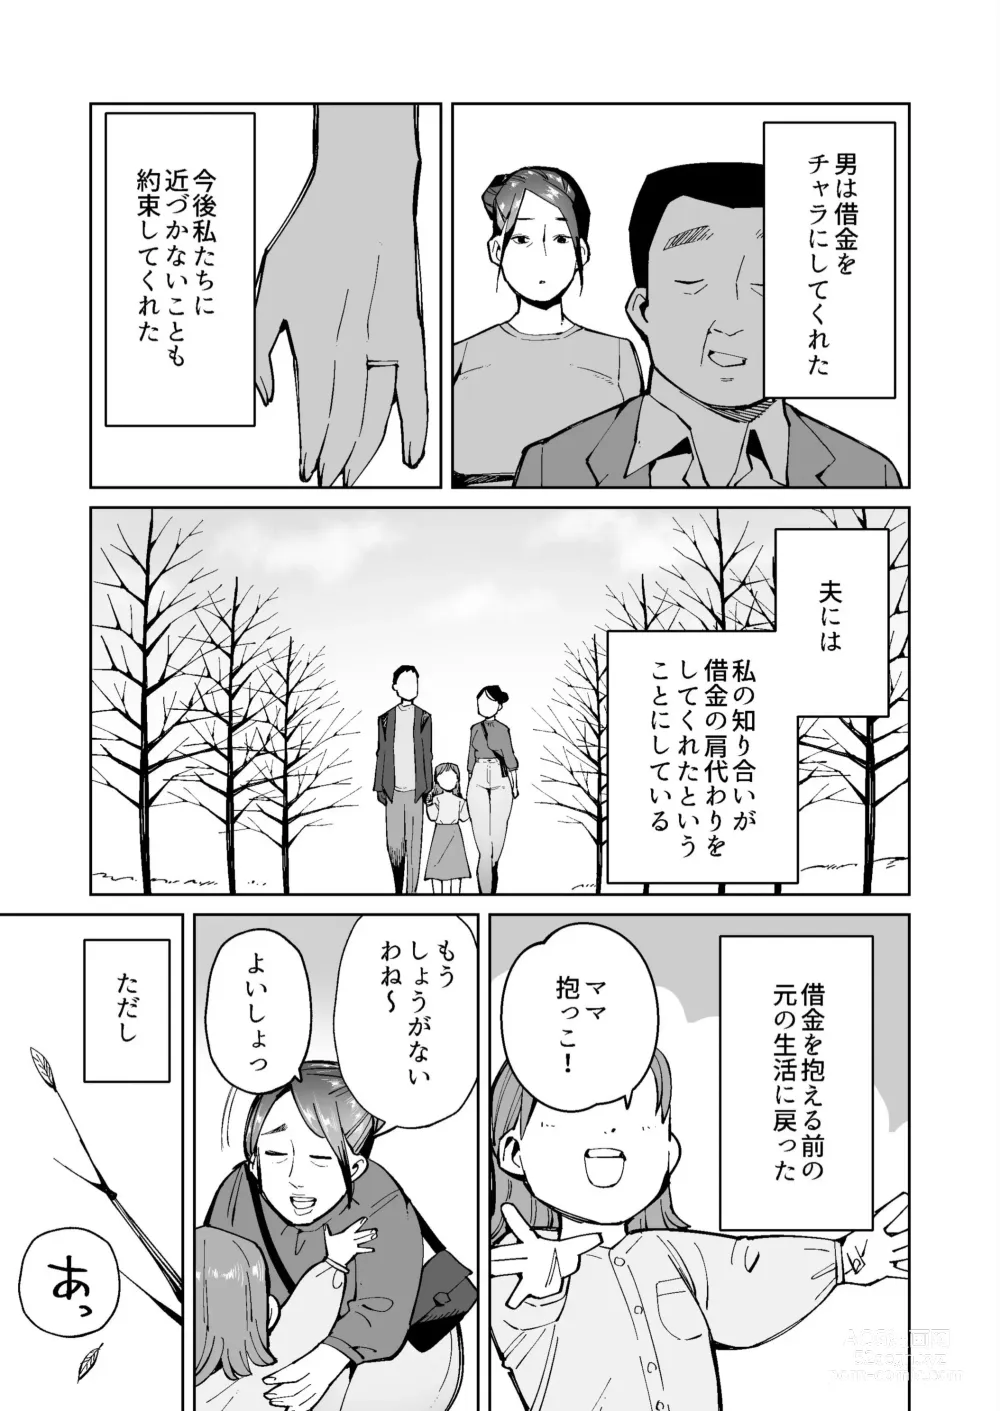 Page 17 of doujinshi Shakkin Hensai no Tame Anal Kakuchou Sare Deka Unko o Hineridasu Houman Jukujo